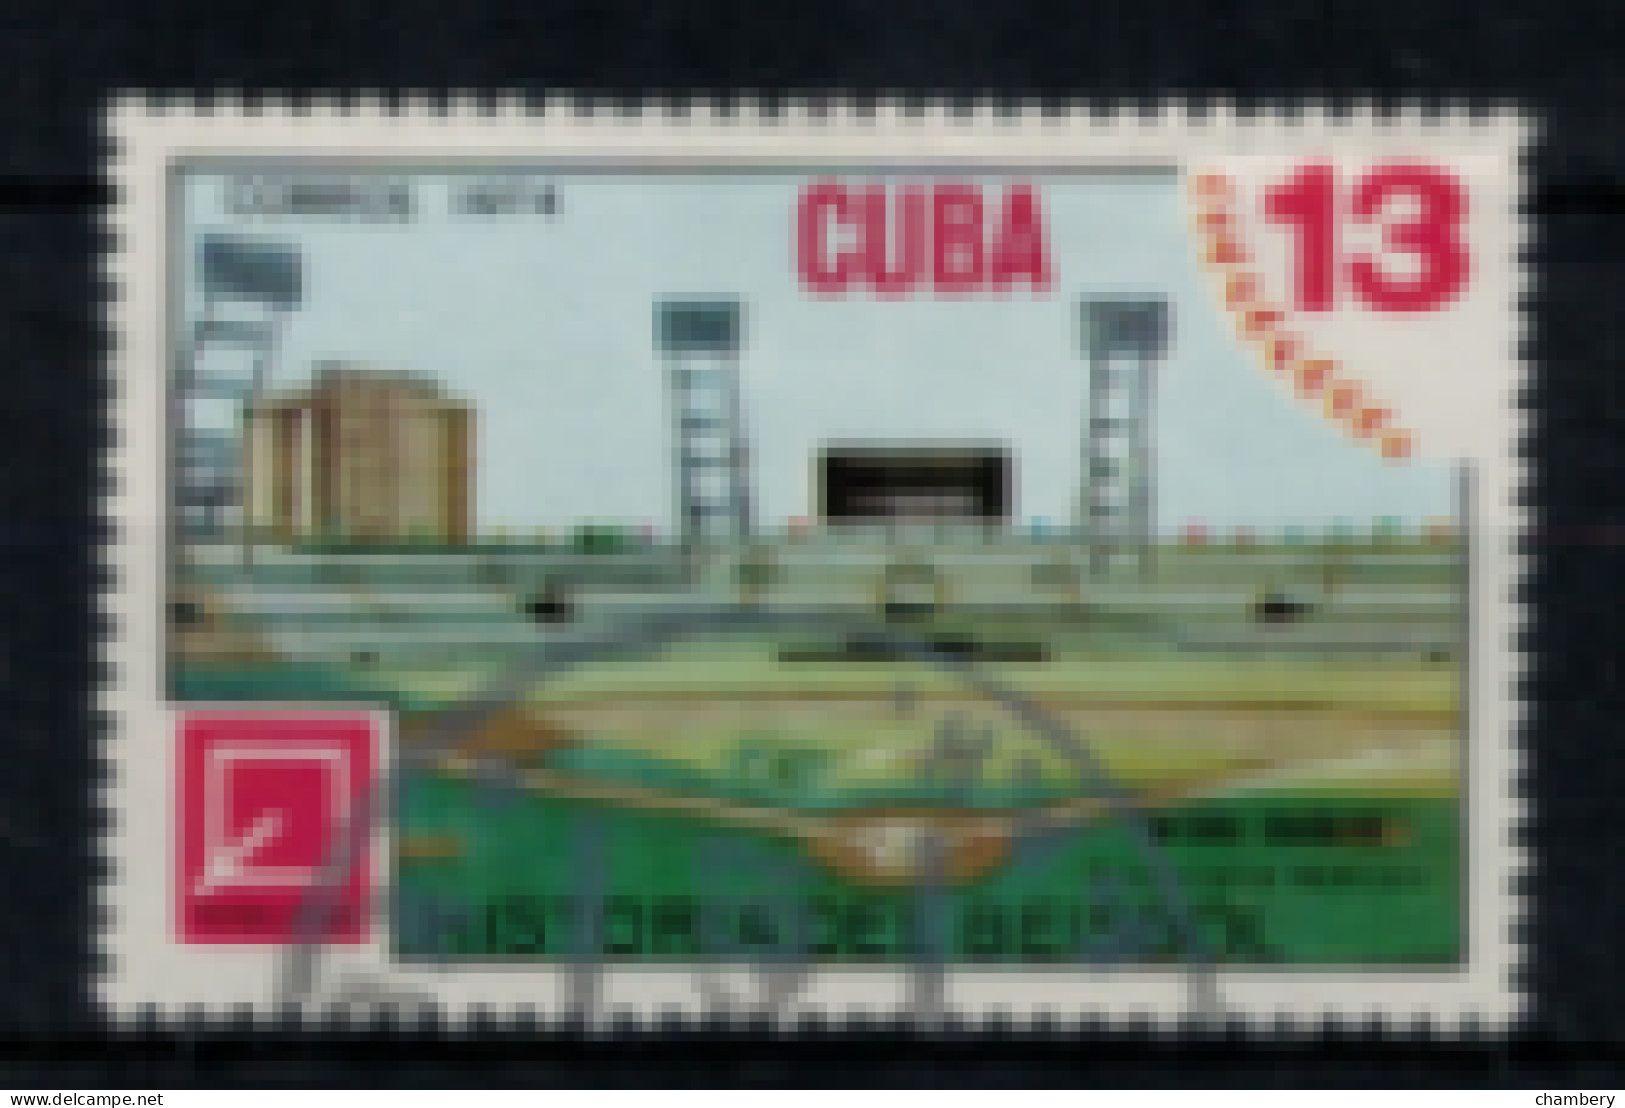 Cuba - "Histoire Du Base-ball : Stade" - Oblitéré N° 1808 De 1974 - Gebruikt